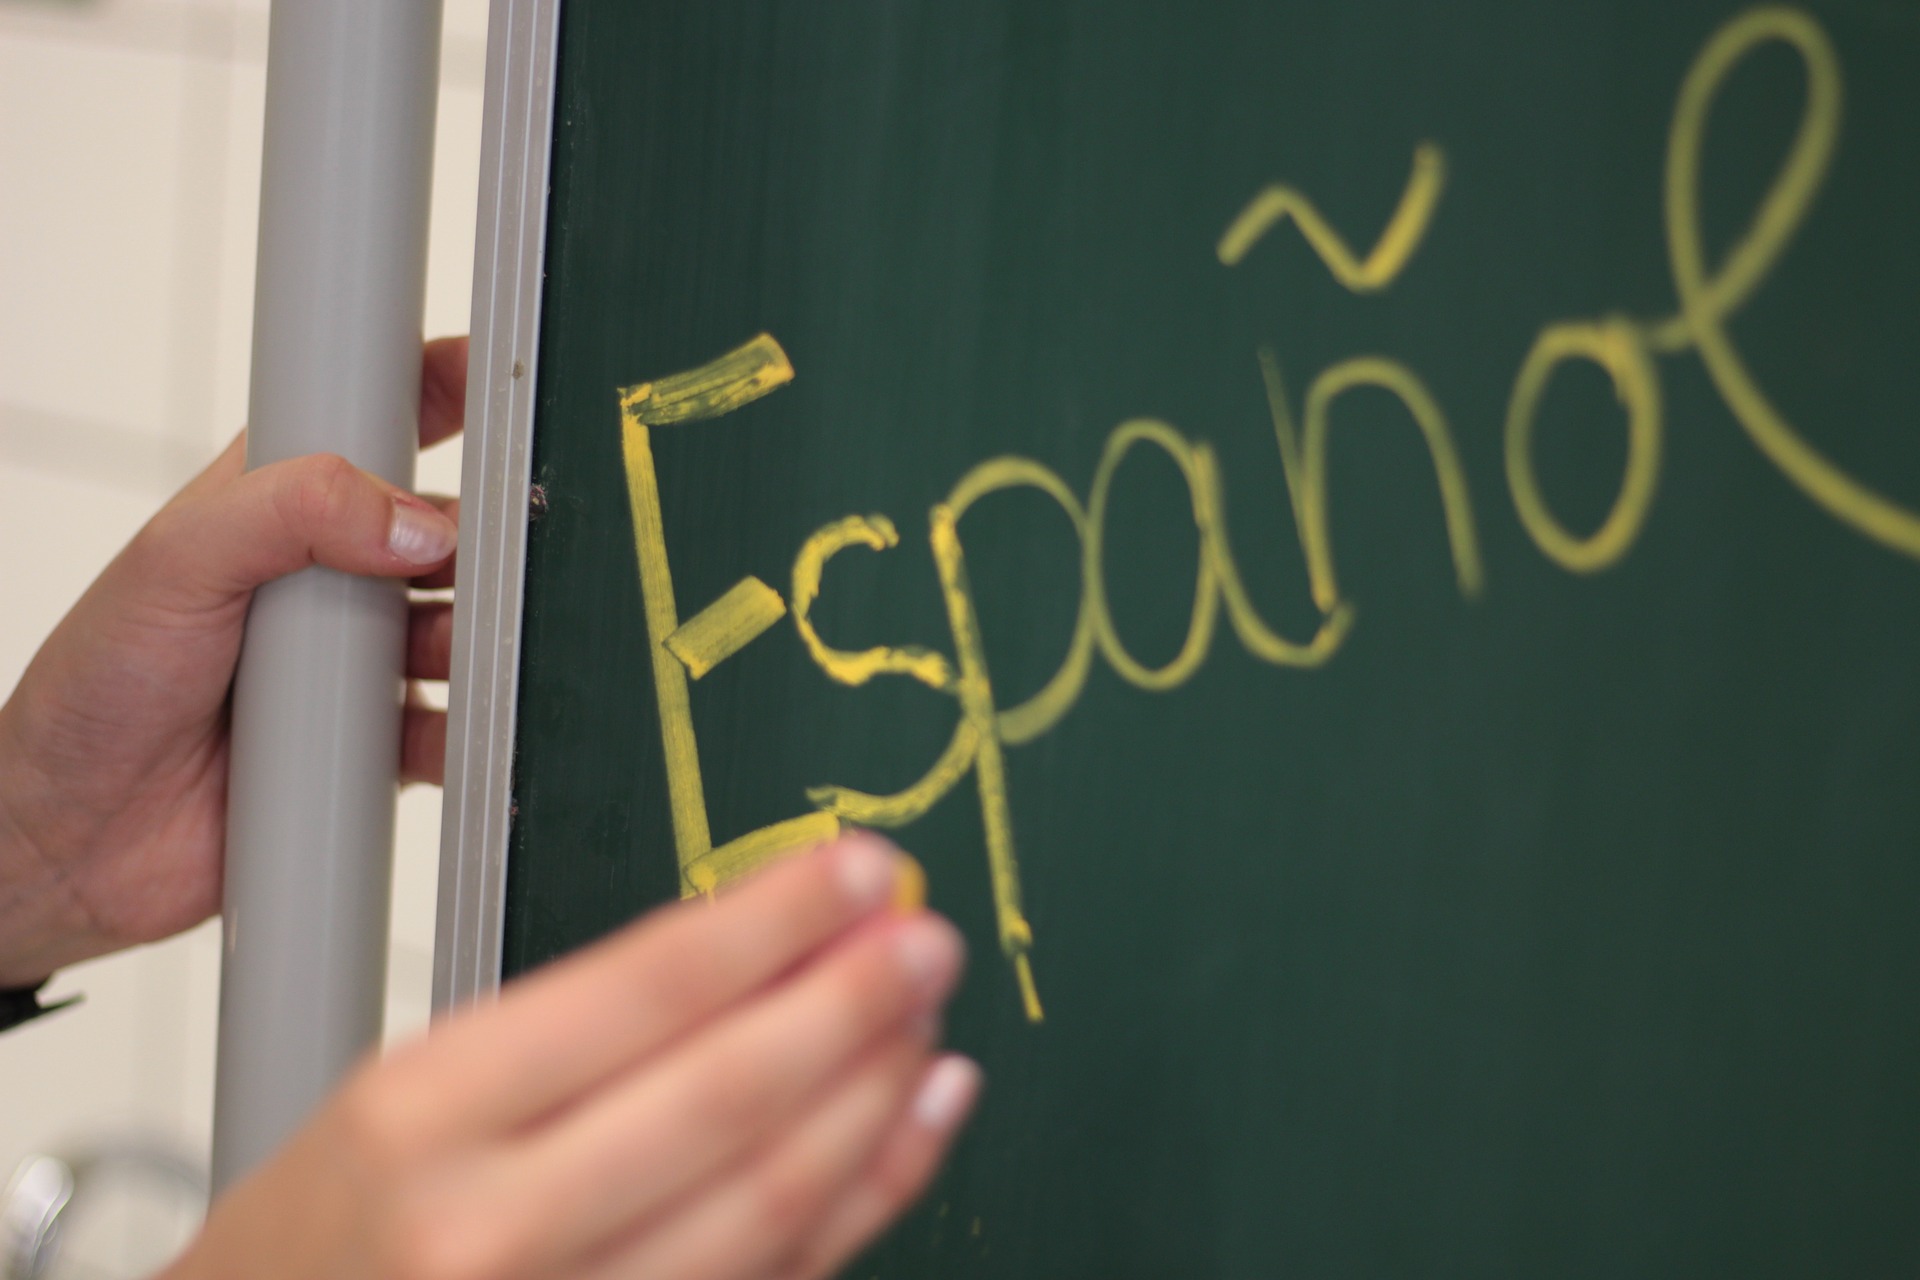 La vida en español Cursos de español en línea Cours d'espagnol en ligne Spanish courses online cursos de espanhol online